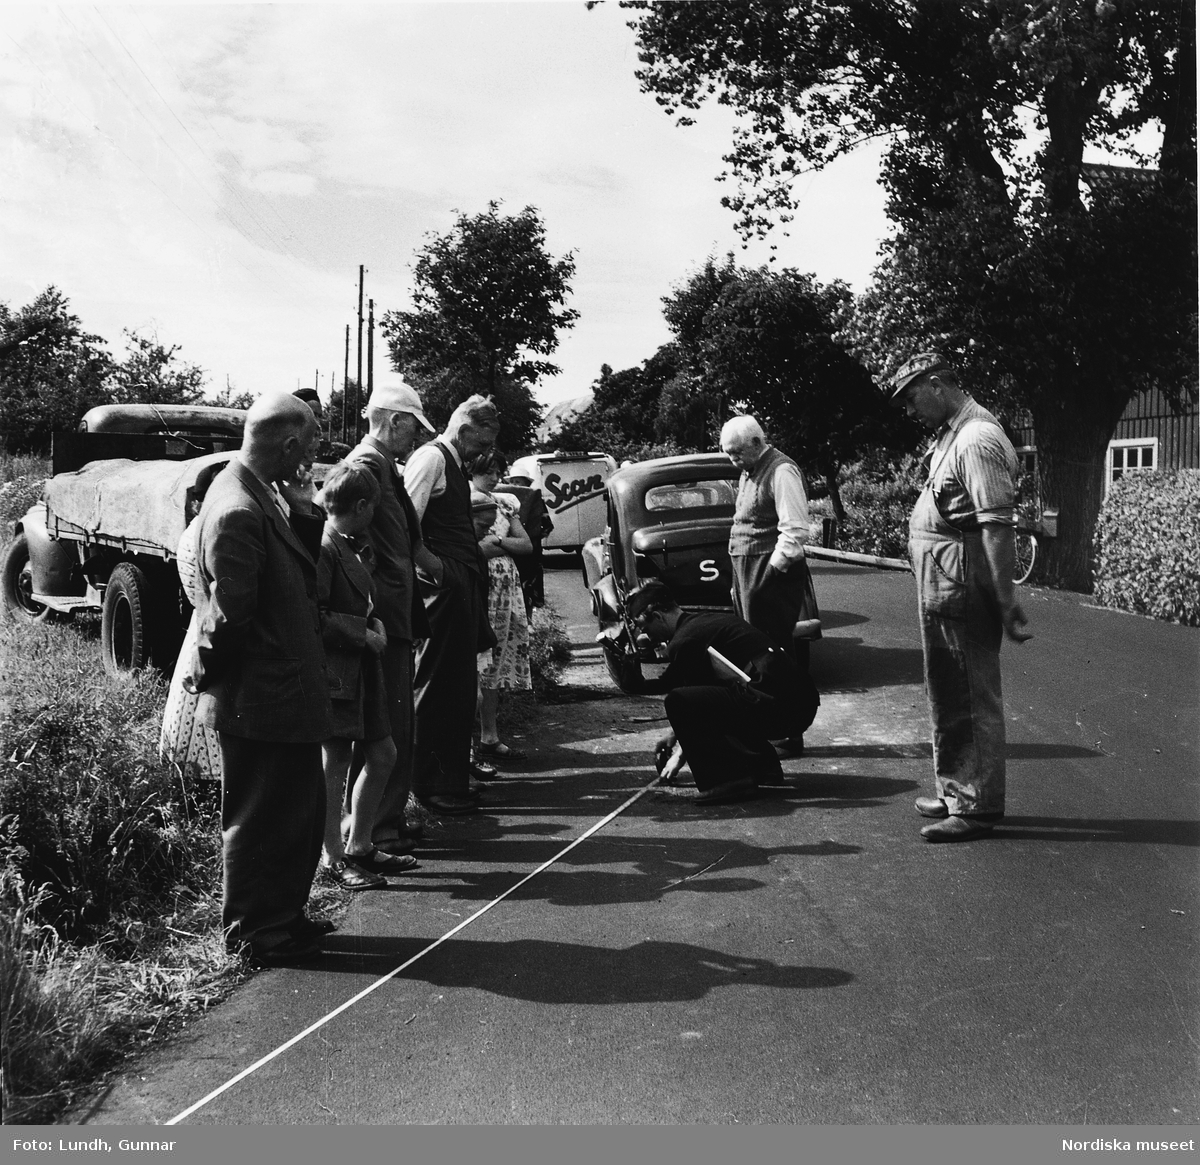 Trafikolycka i Skåne år 1950. En polis mäter med måttband på vägen medans en folksamling tittar på.  Bilar och en lastbil står vid vägkanten.